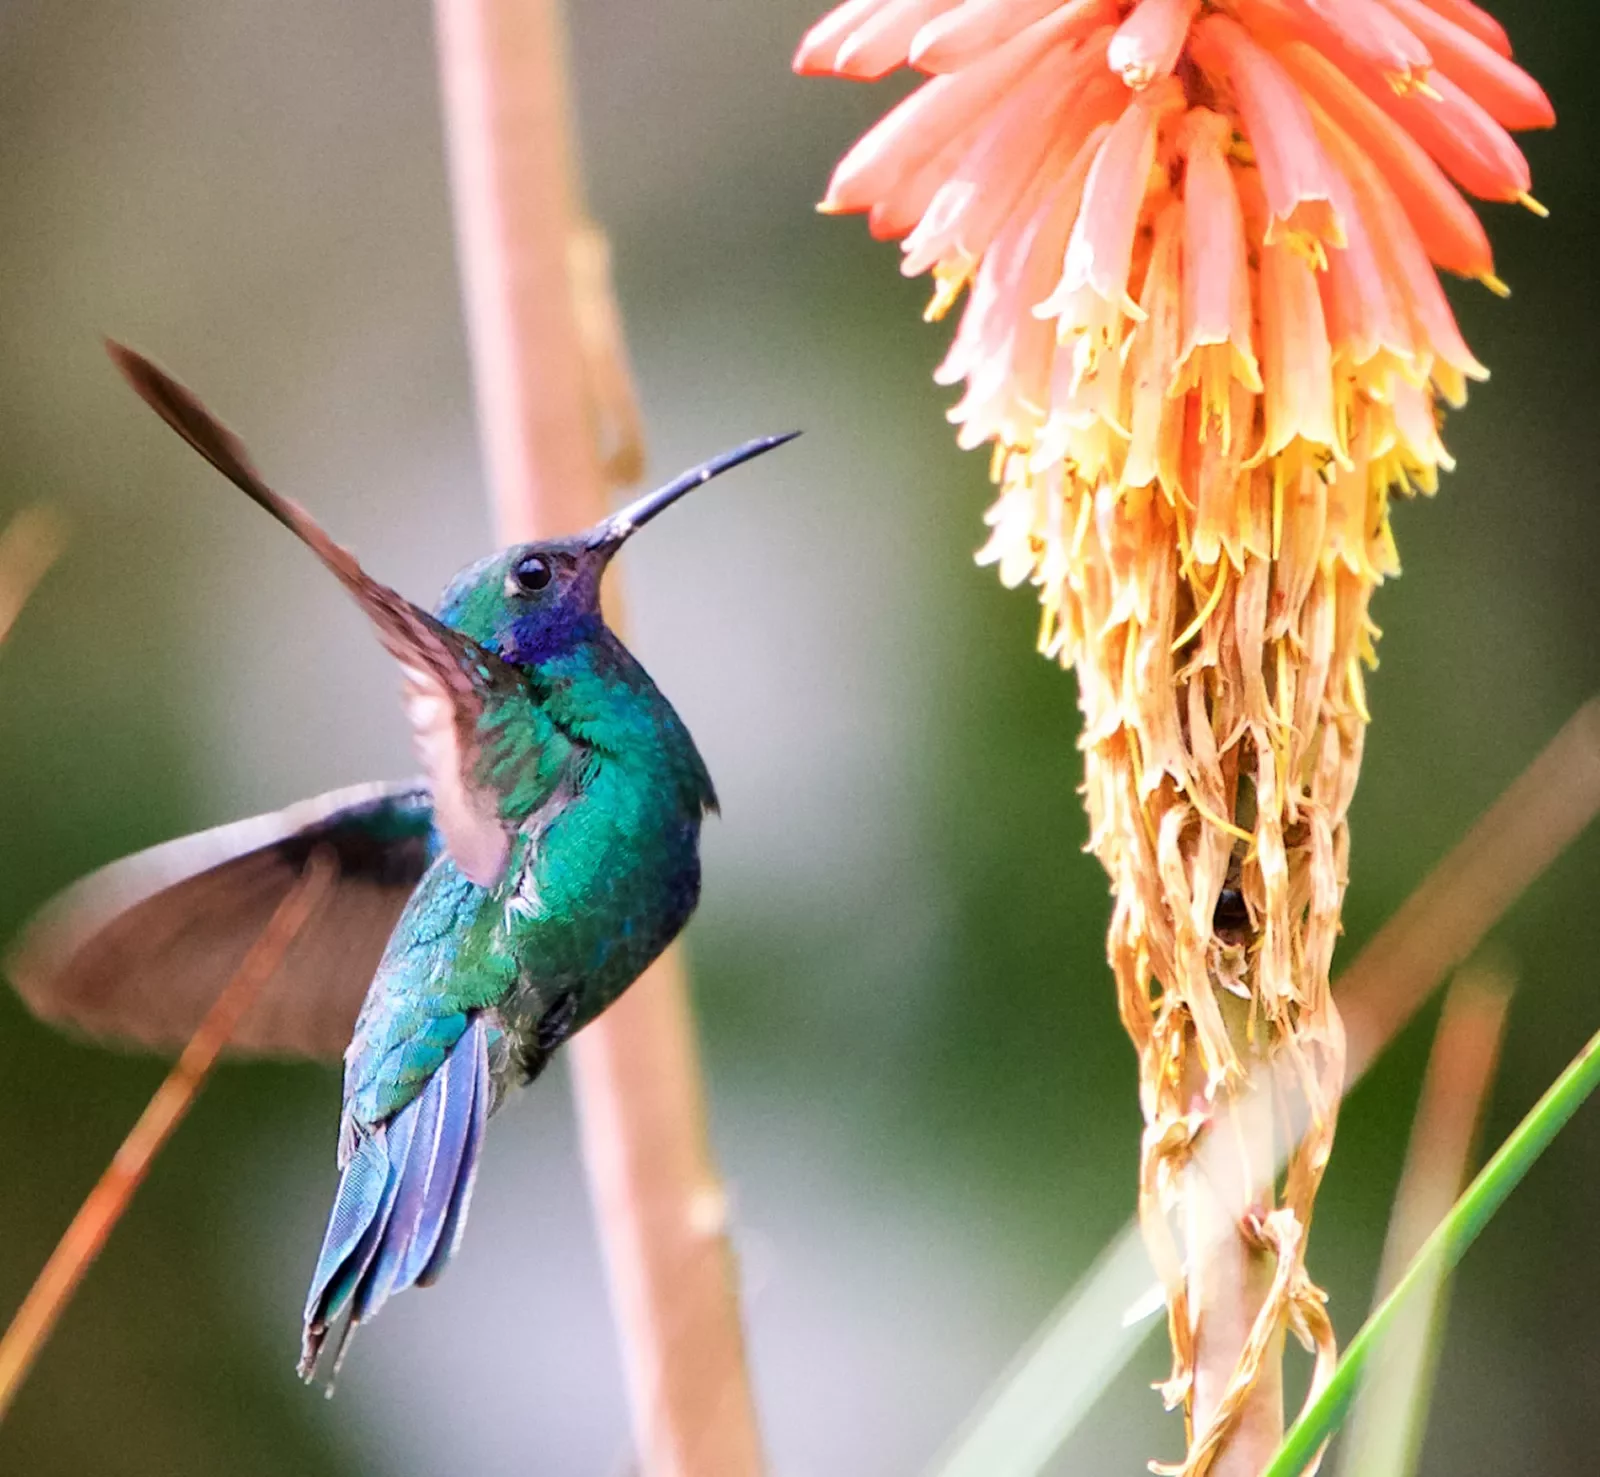 A hummingbird approaches a flower